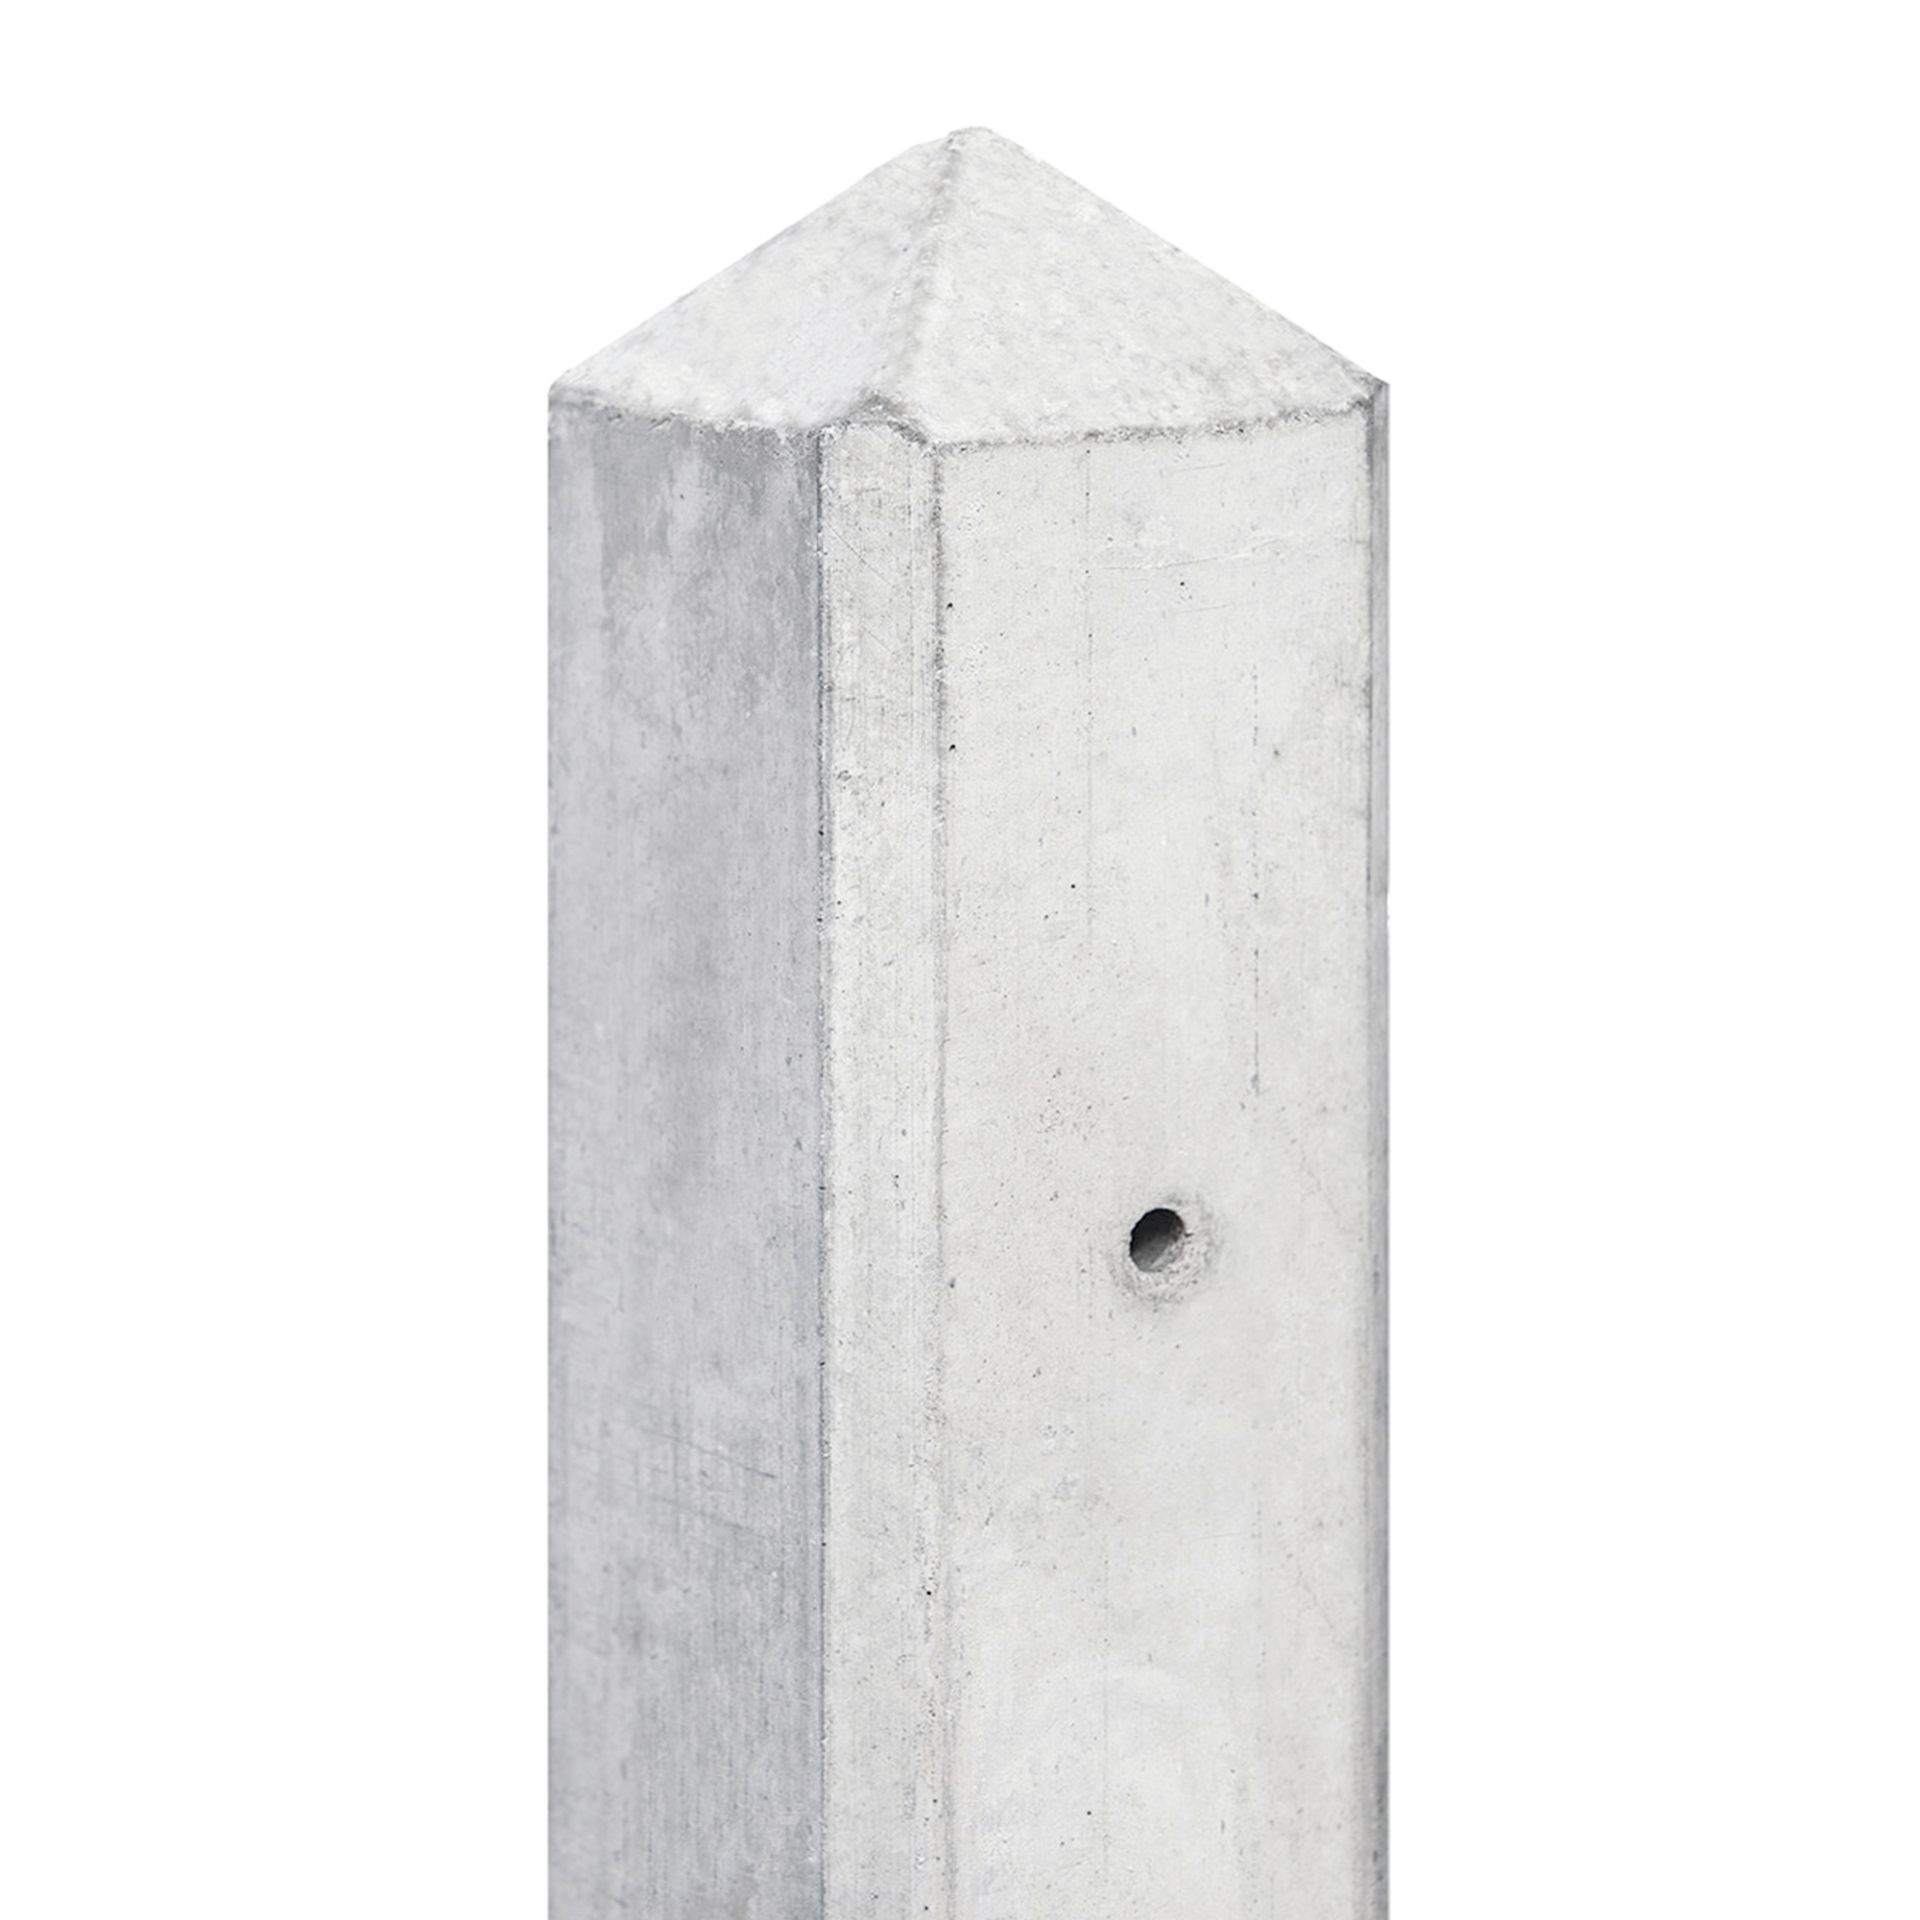 Betonpalen met diamantkop voor hout beton schutting